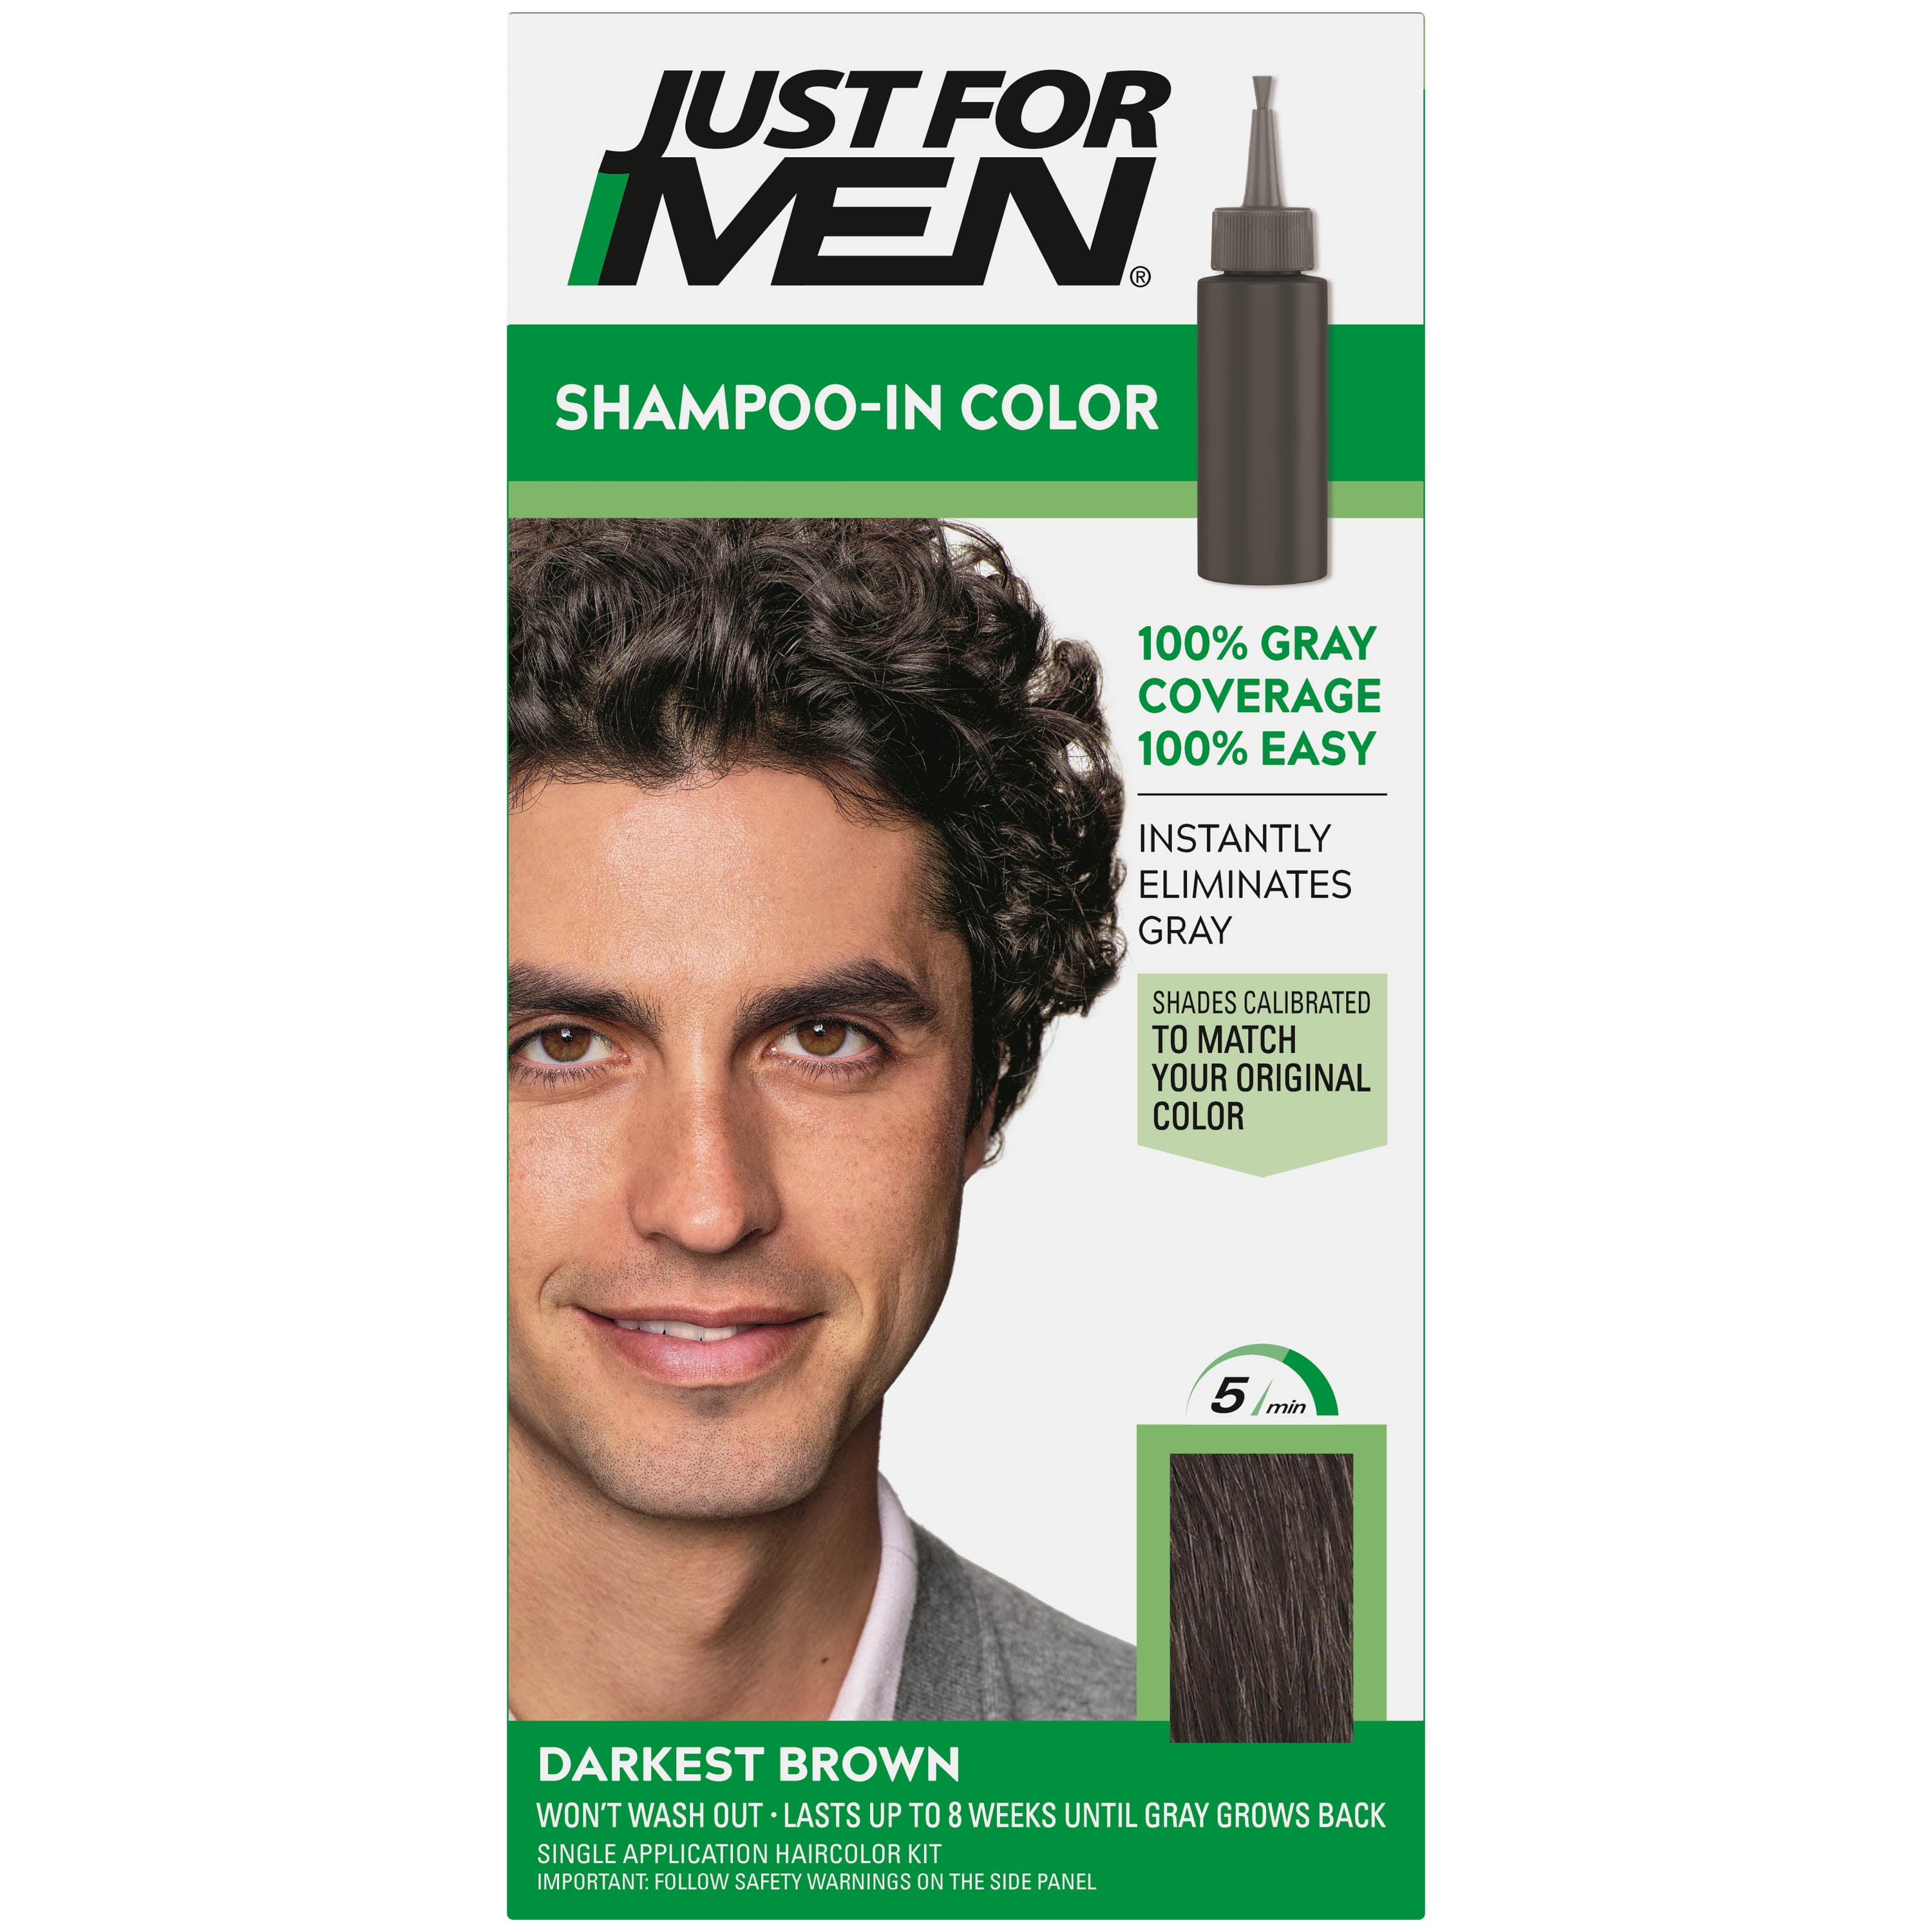 Just For Men Shampoo-in Hair Dye for Men, H-50 Darkest Brown